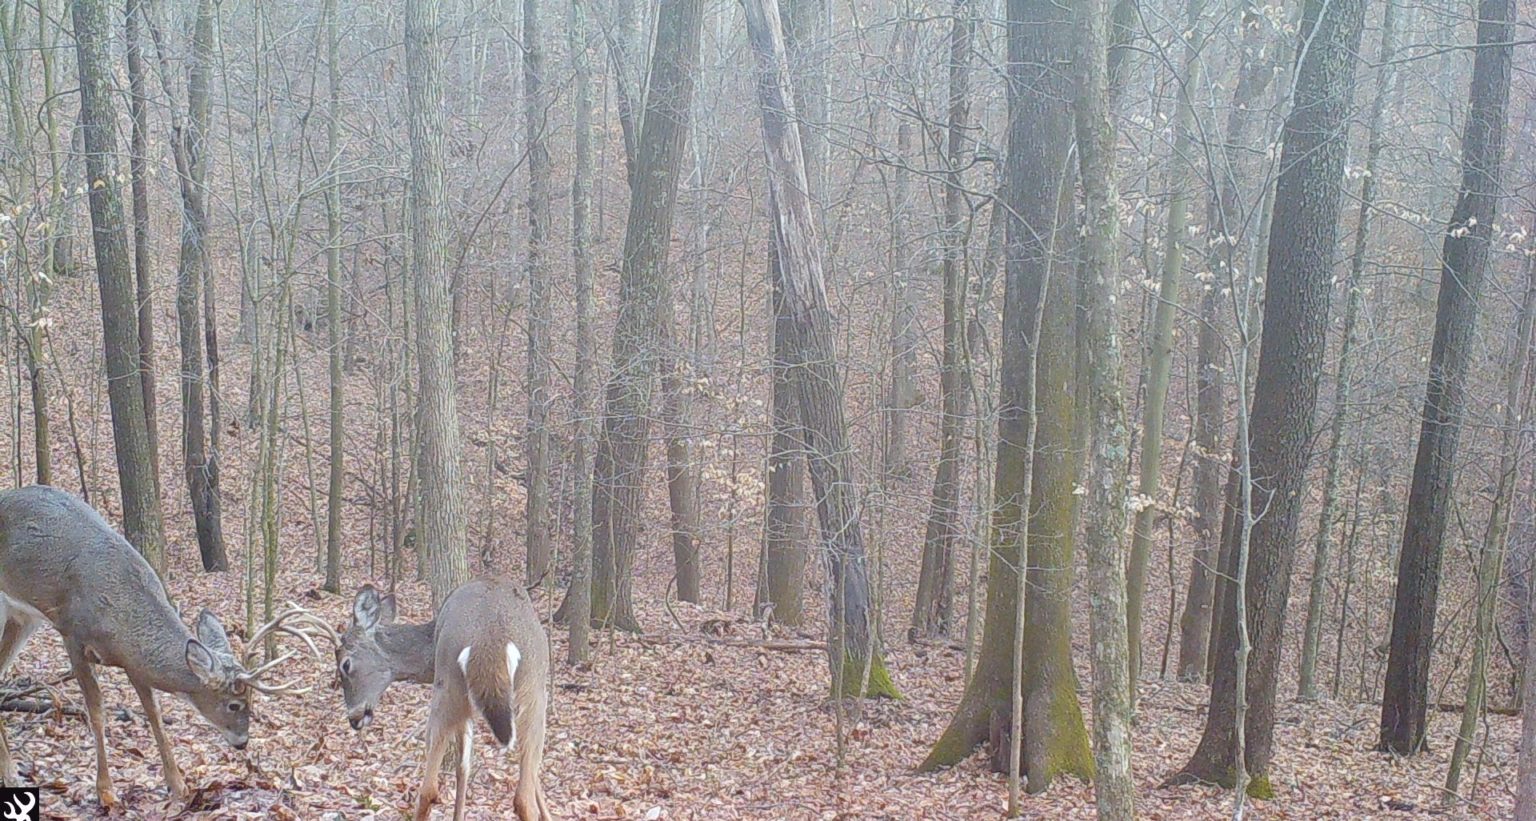 Bucks fight in the woods